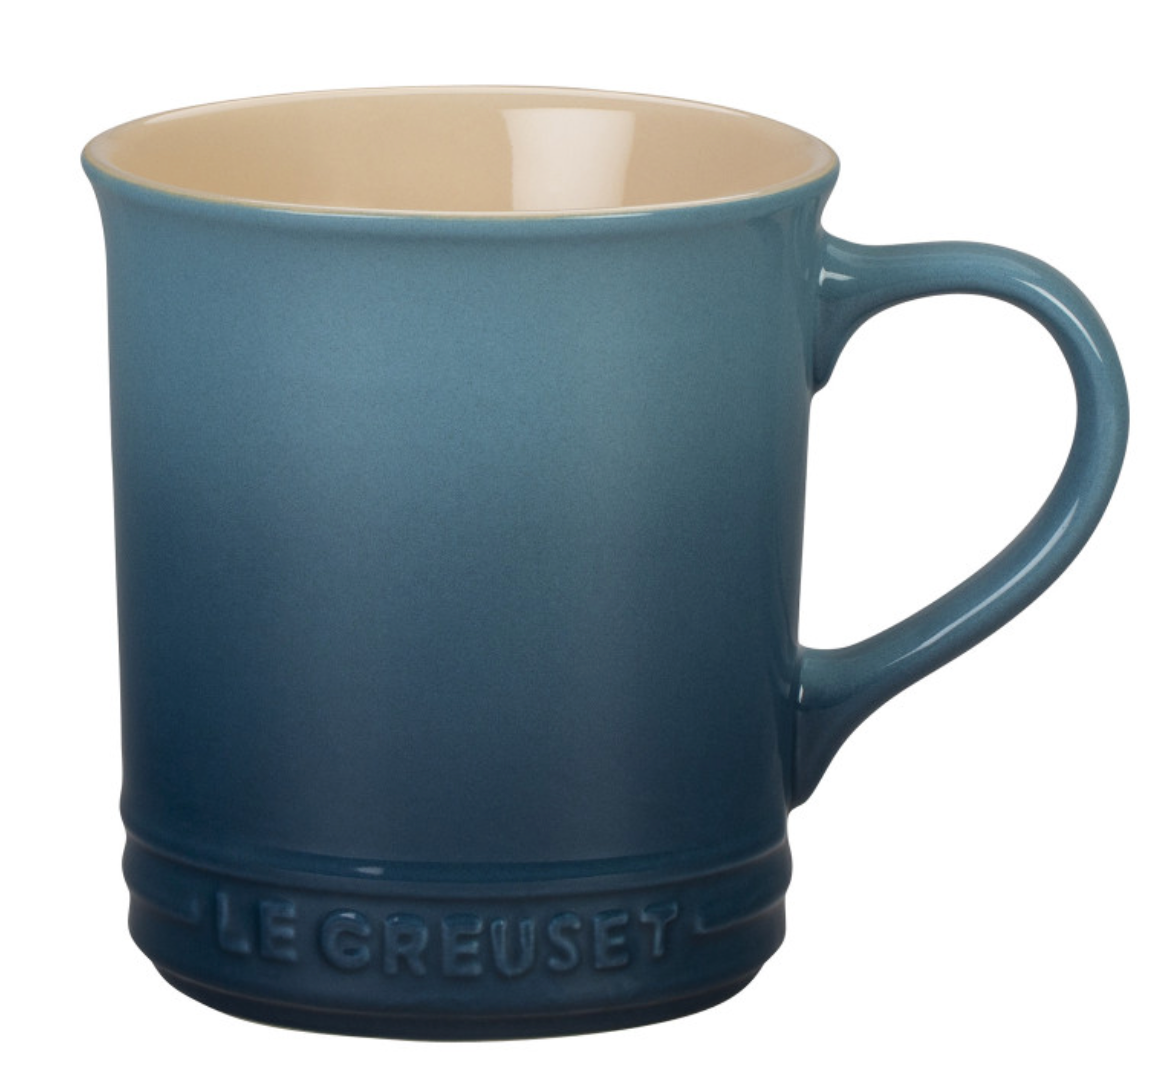 Le Creuset Stoneware Espresso Mug, 3 oz., Flame